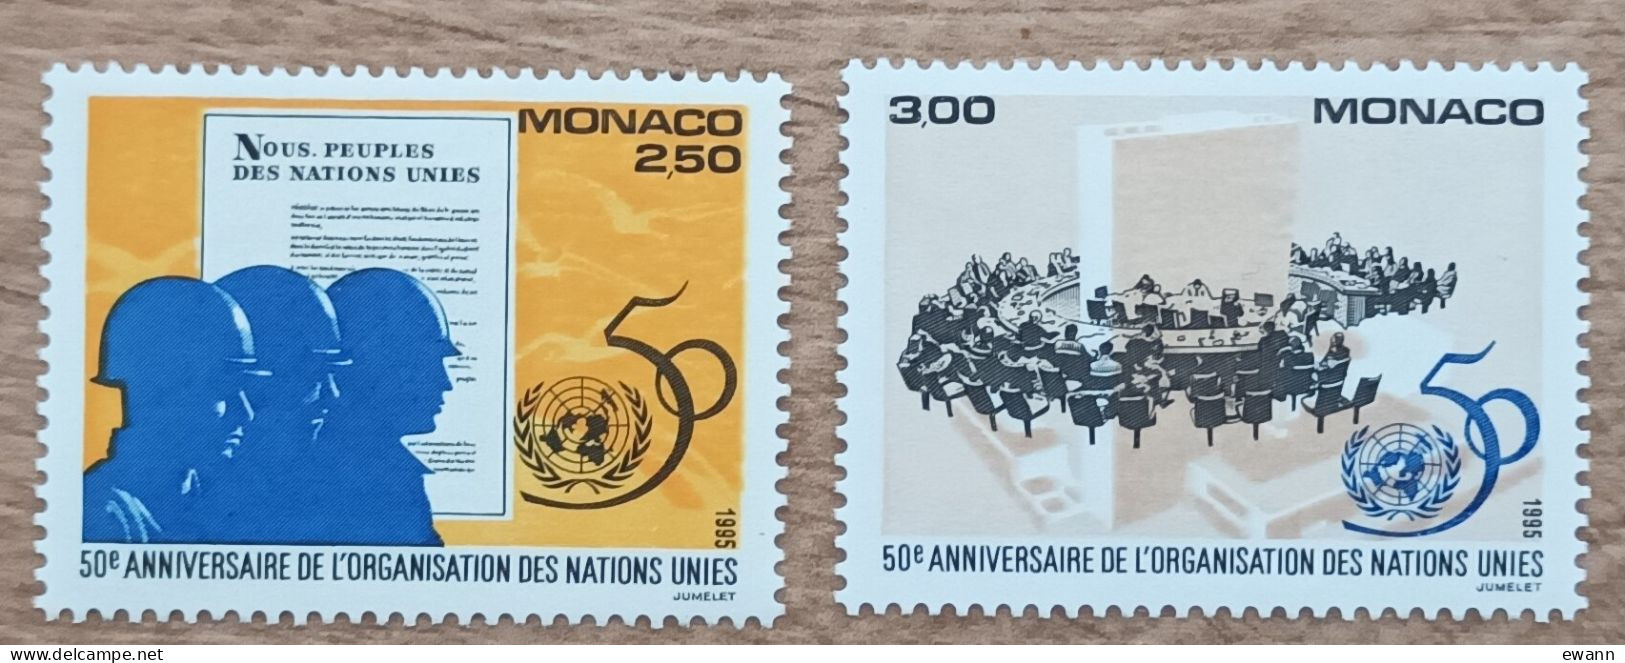 Monaco - YT N°2002, 2003 - 50e Anniversaire De L'Organisation Des Nations Unies / ONU - 1995 - Neuf - Neufs